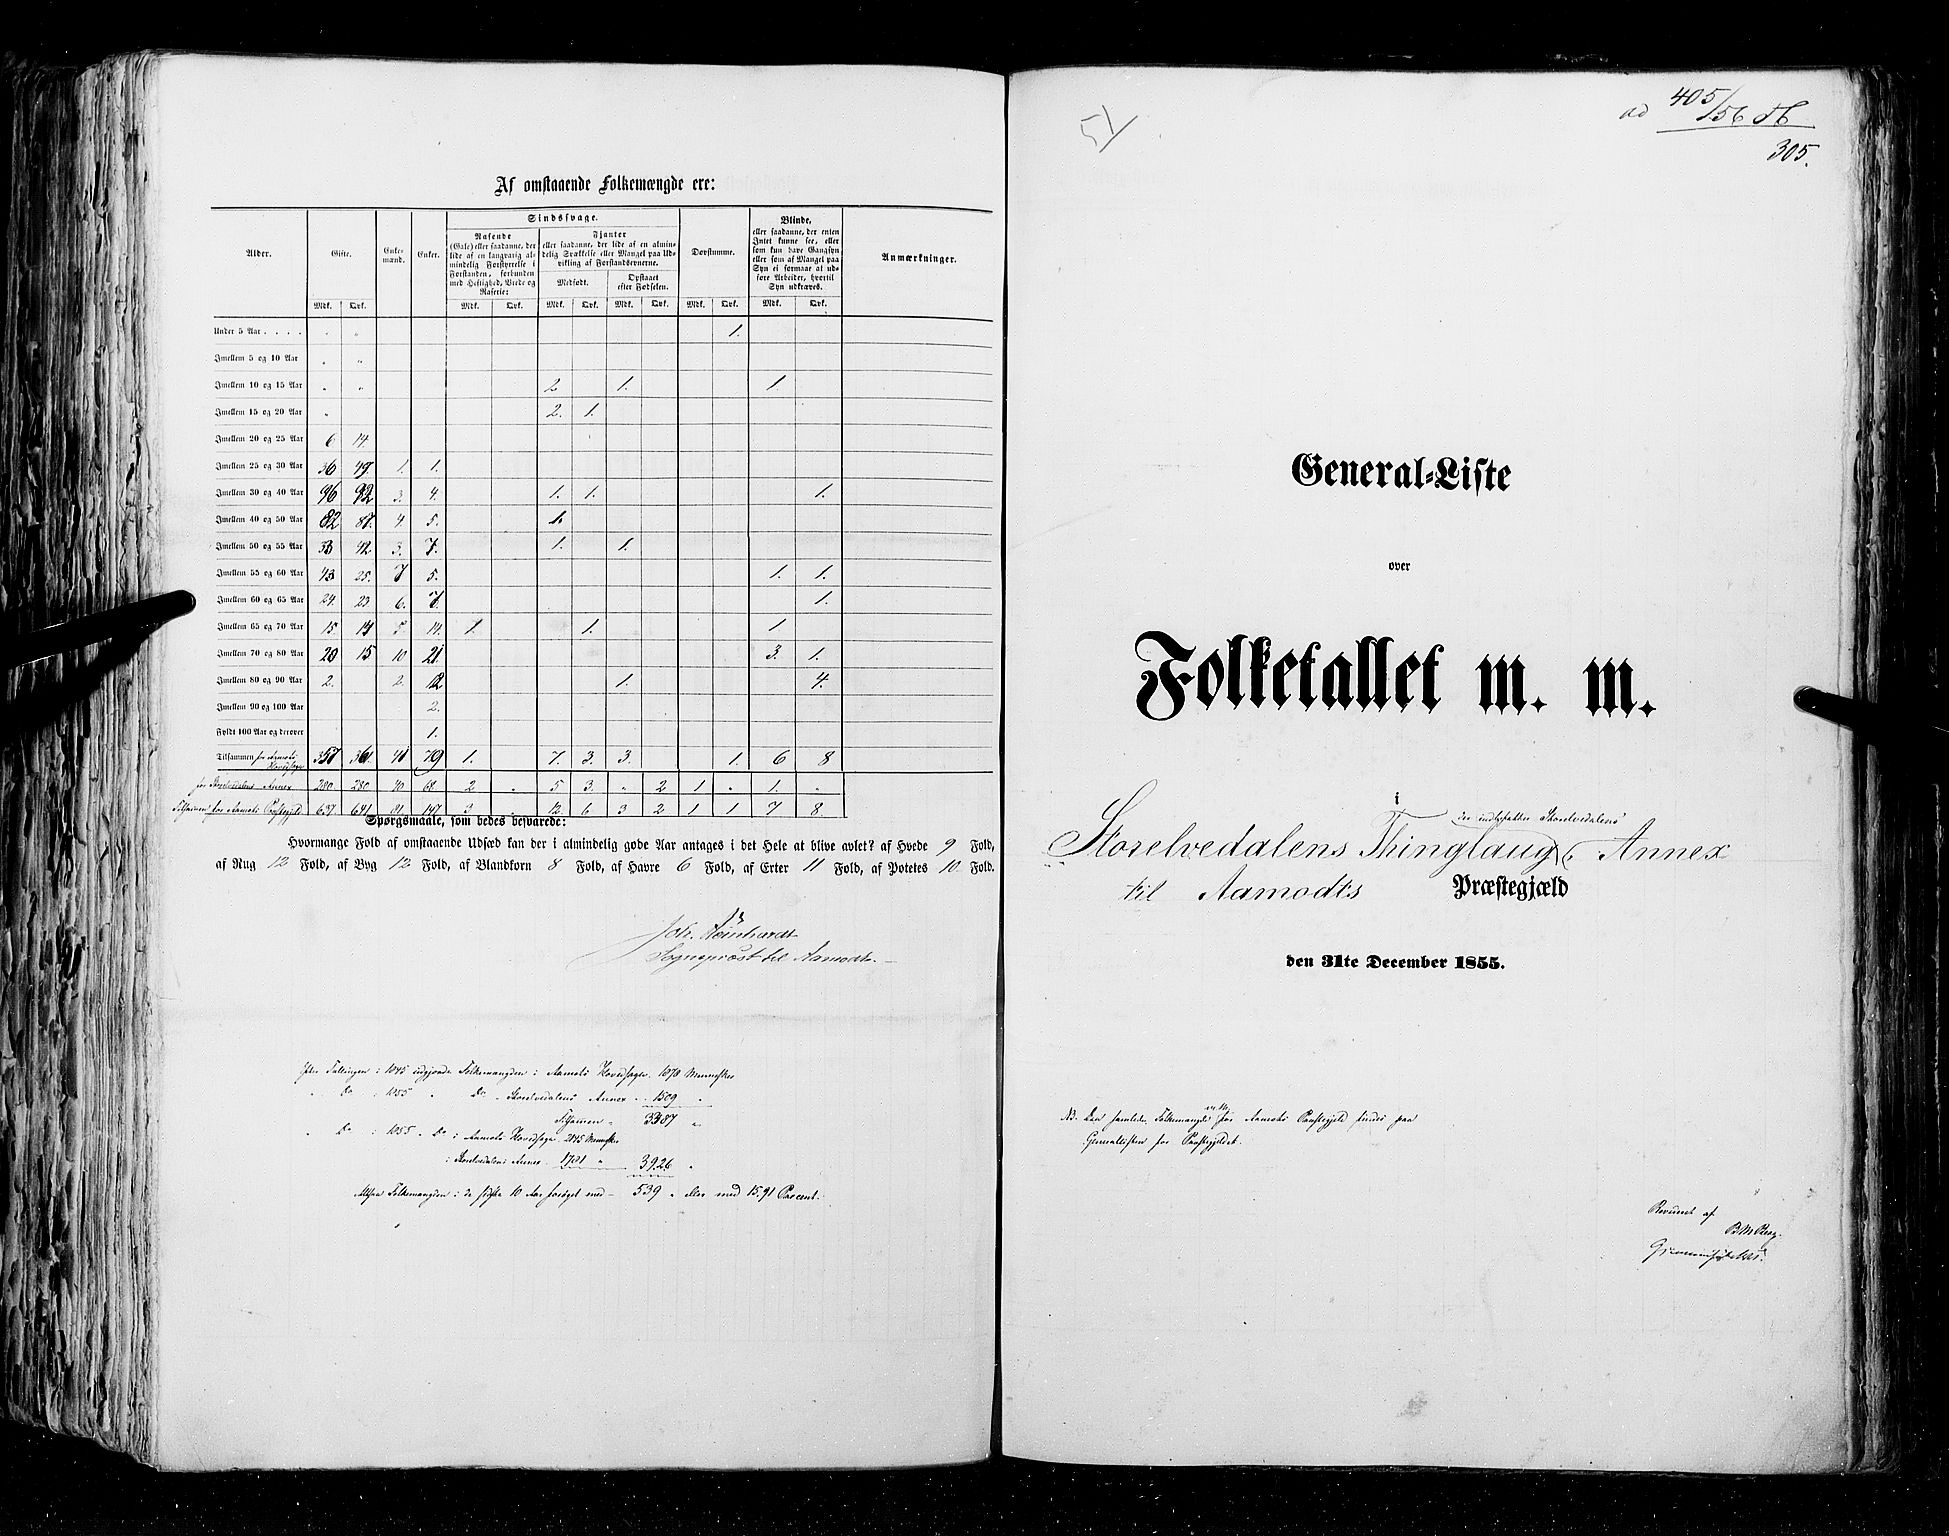 RA, Census 1855, vol. 1: Akershus amt, Smålenenes amt og Hedemarken amt, 1855, p. 305